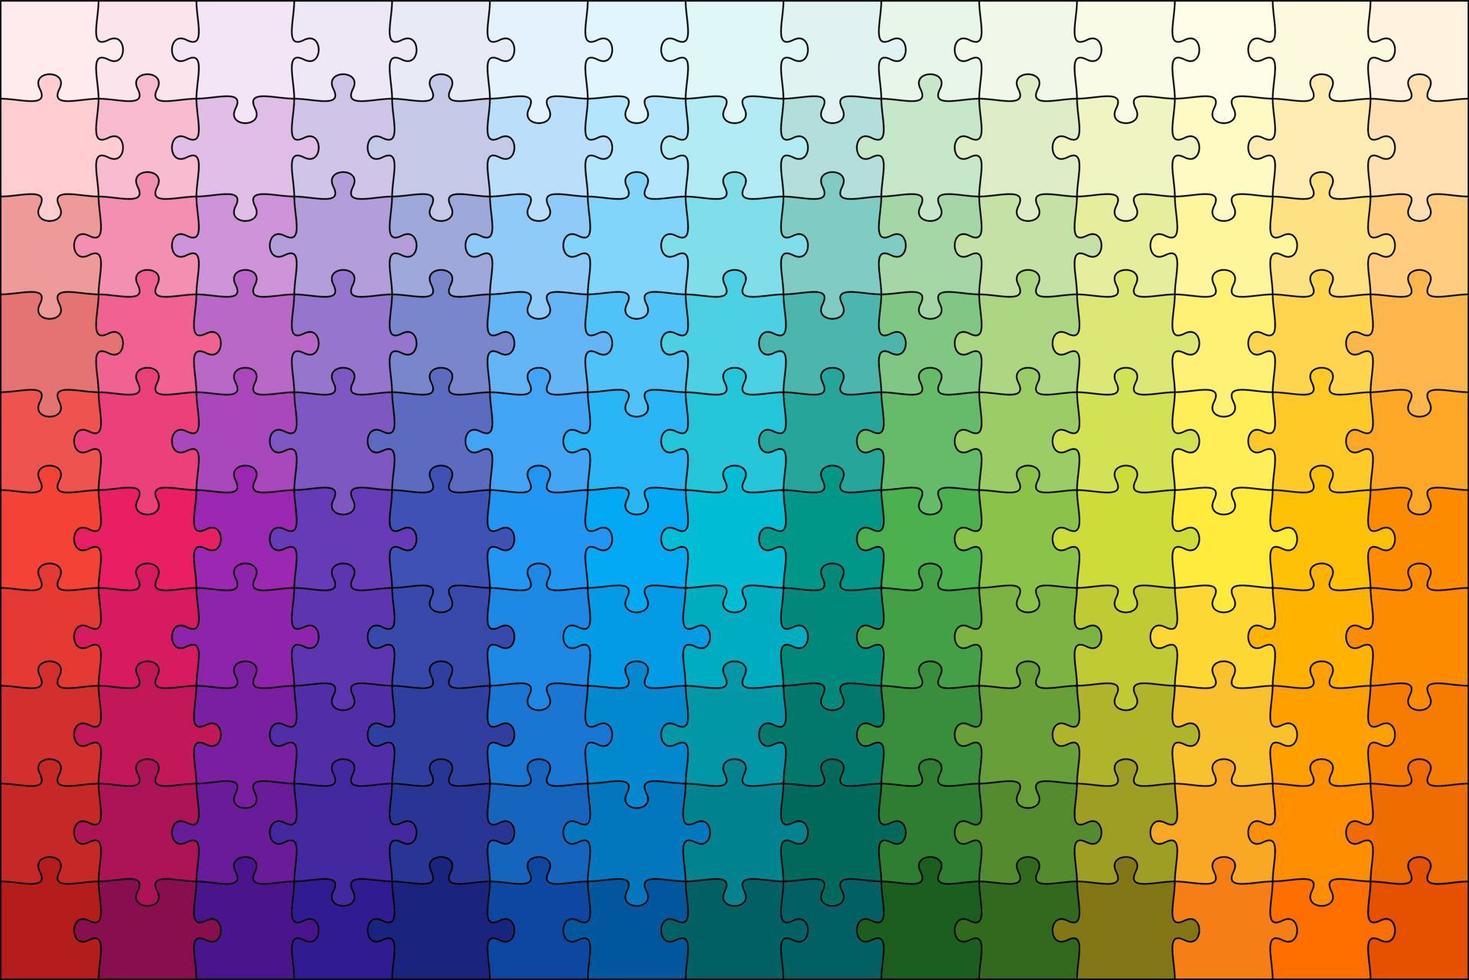 modello di gioco di puzzle di 150 pezzi colorati nella tavolozza dei materiali vettore